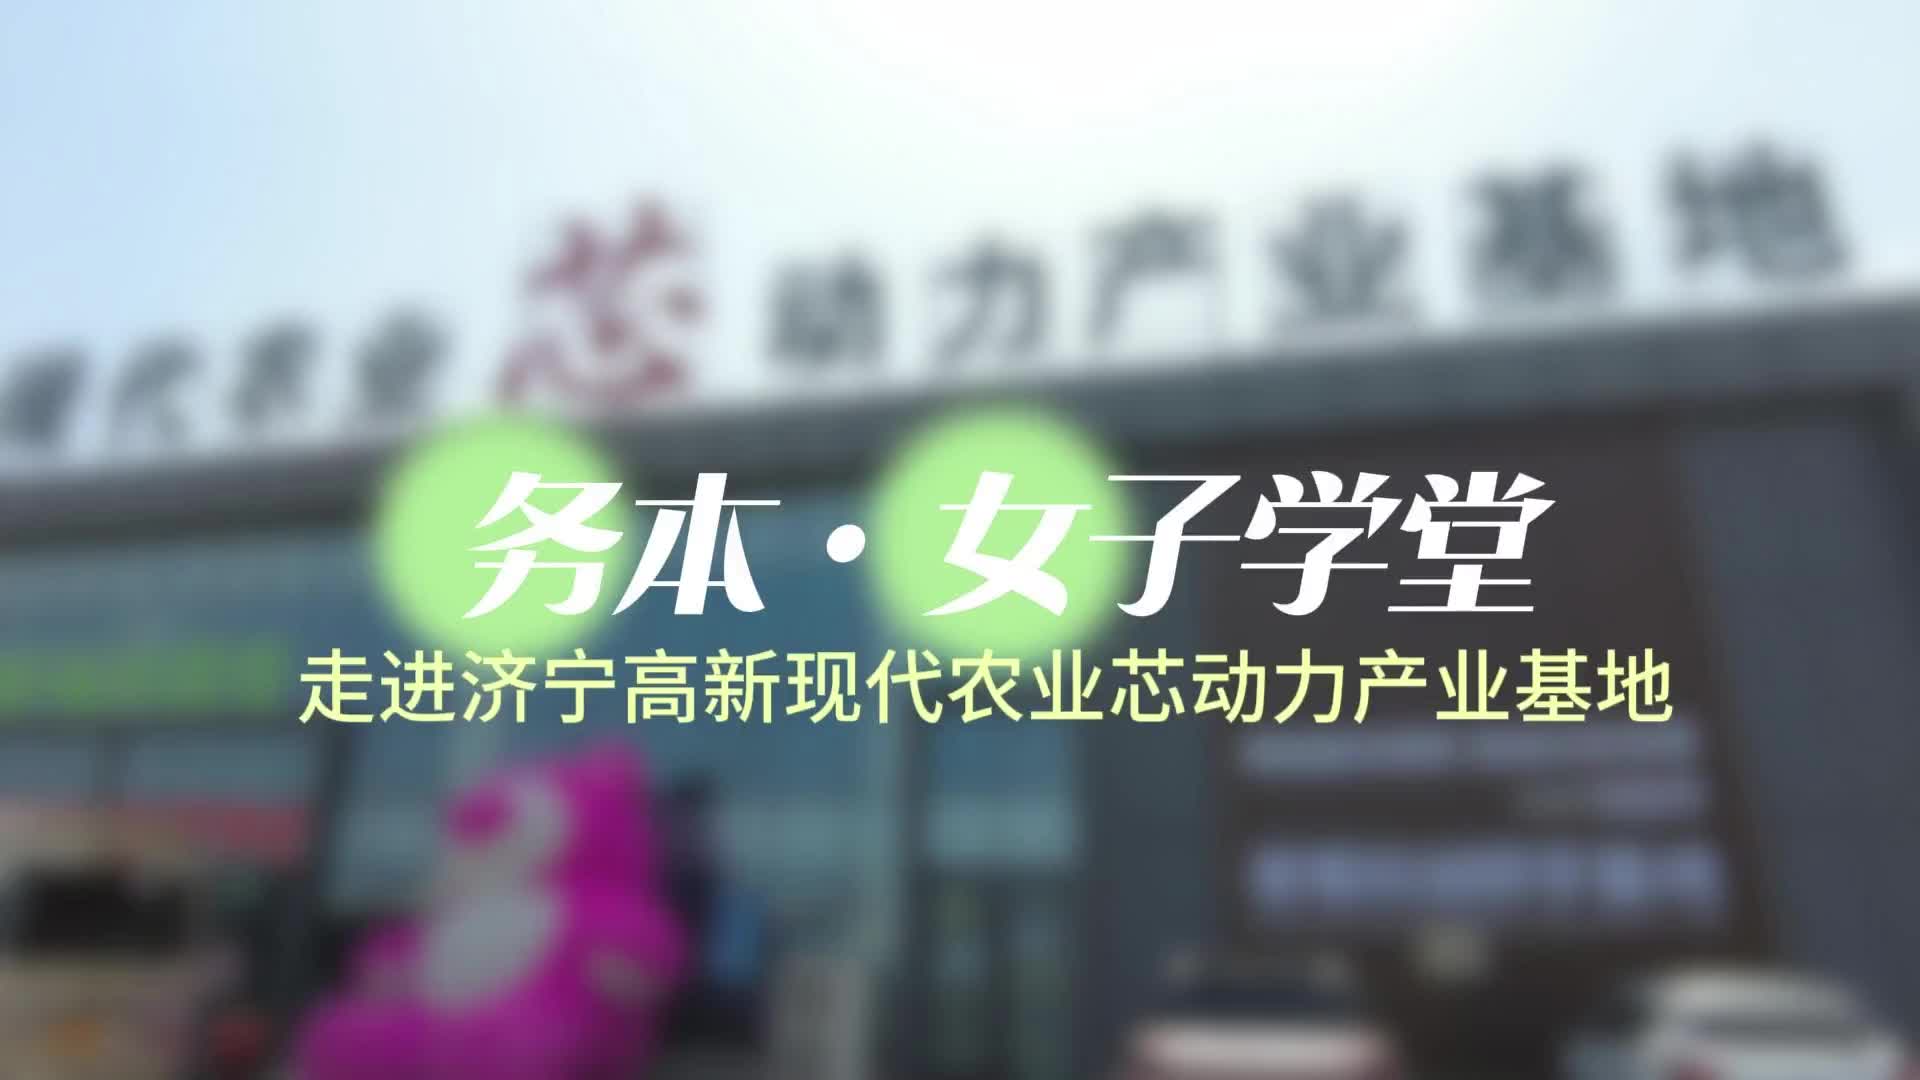 更济宁 | 务本·女子学堂走进济宁高新现代芯动力产业基地